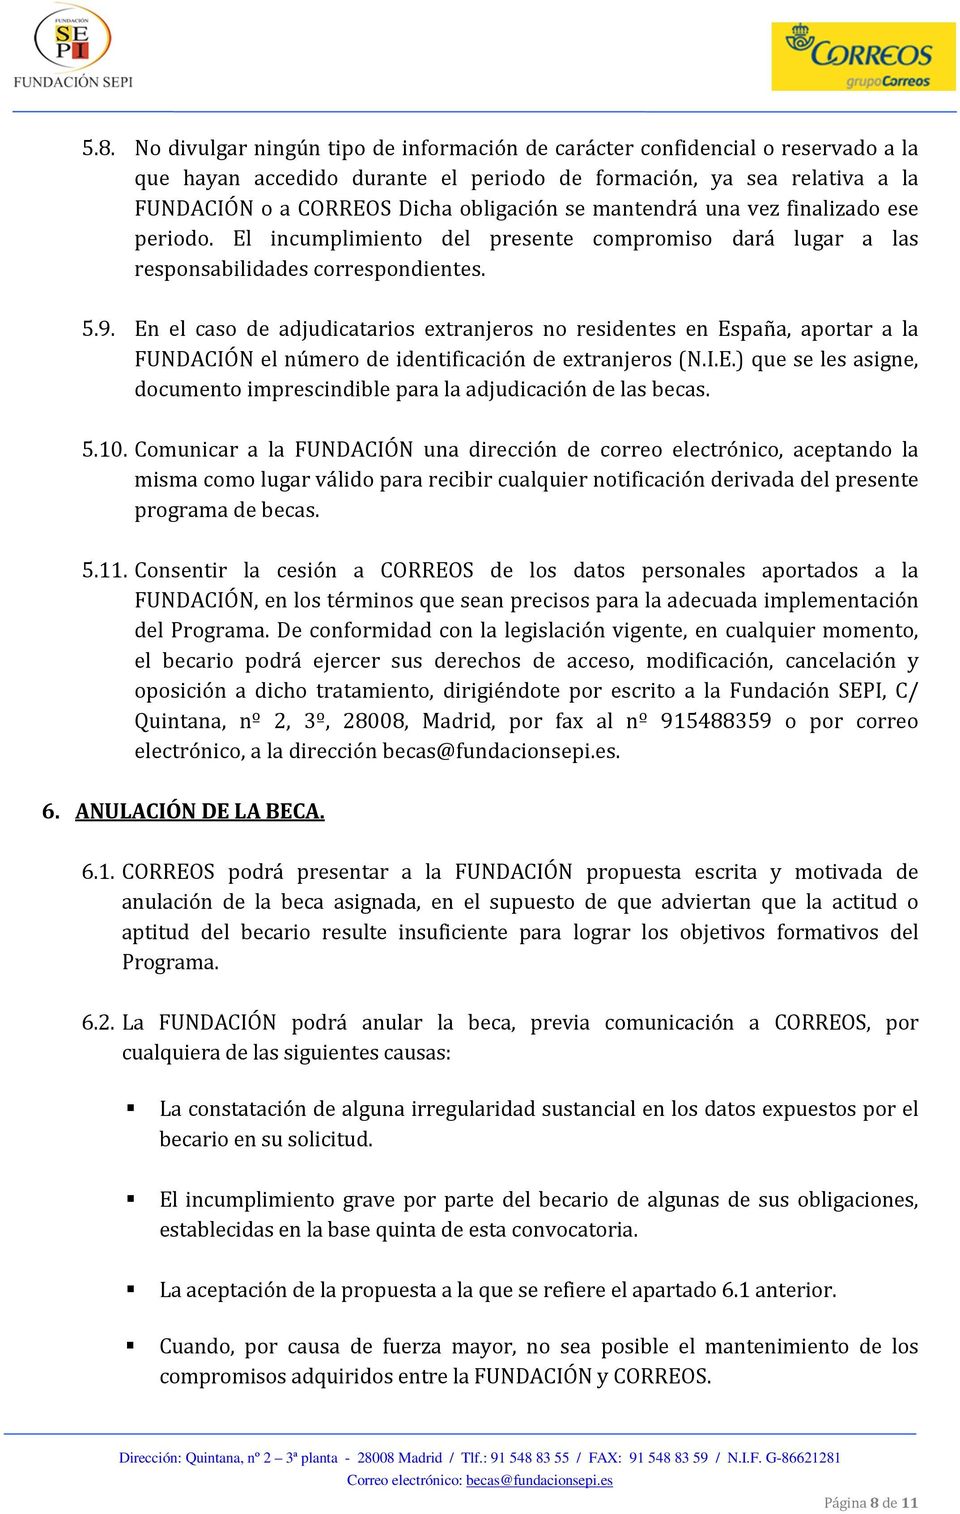 En el caso de adjudicatarios extranjeros no residentes en España, aportar a la FUNDACIÓN el número de identificación de extranjeros (N.I.E.) que se les asigne, documento imprescindible para la adjudicación de las becas.